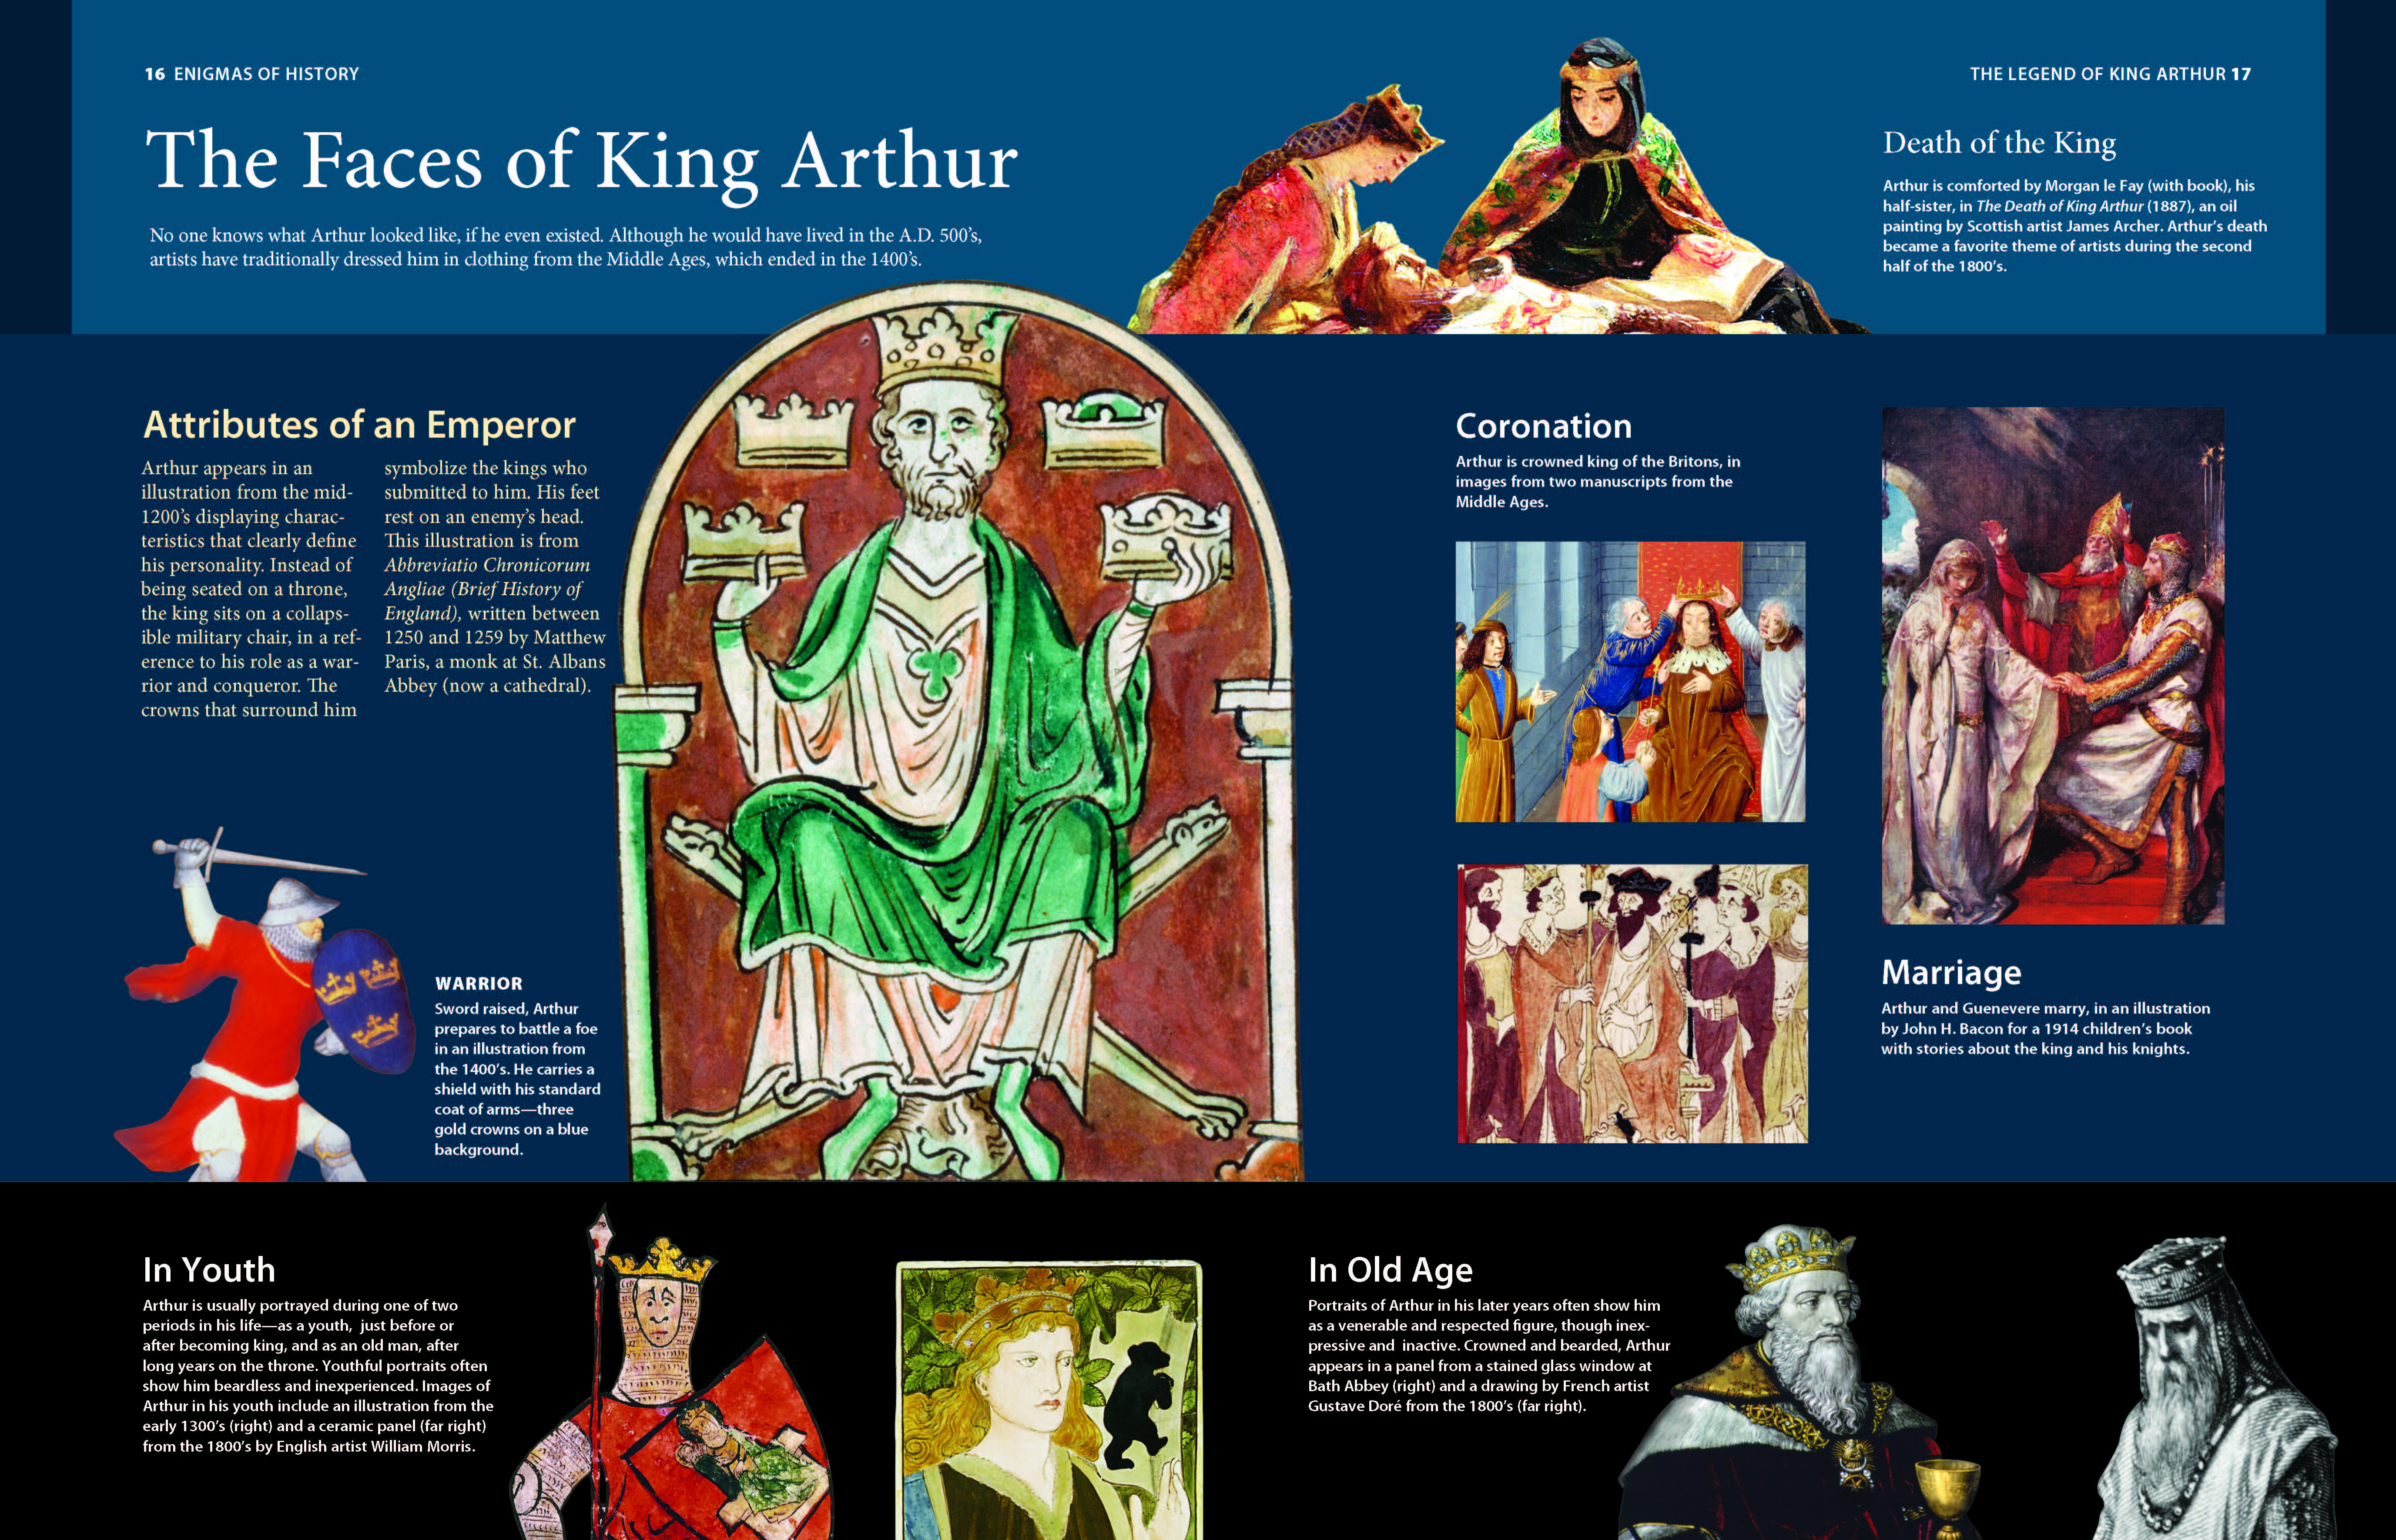 king arthur activities on chivalry code